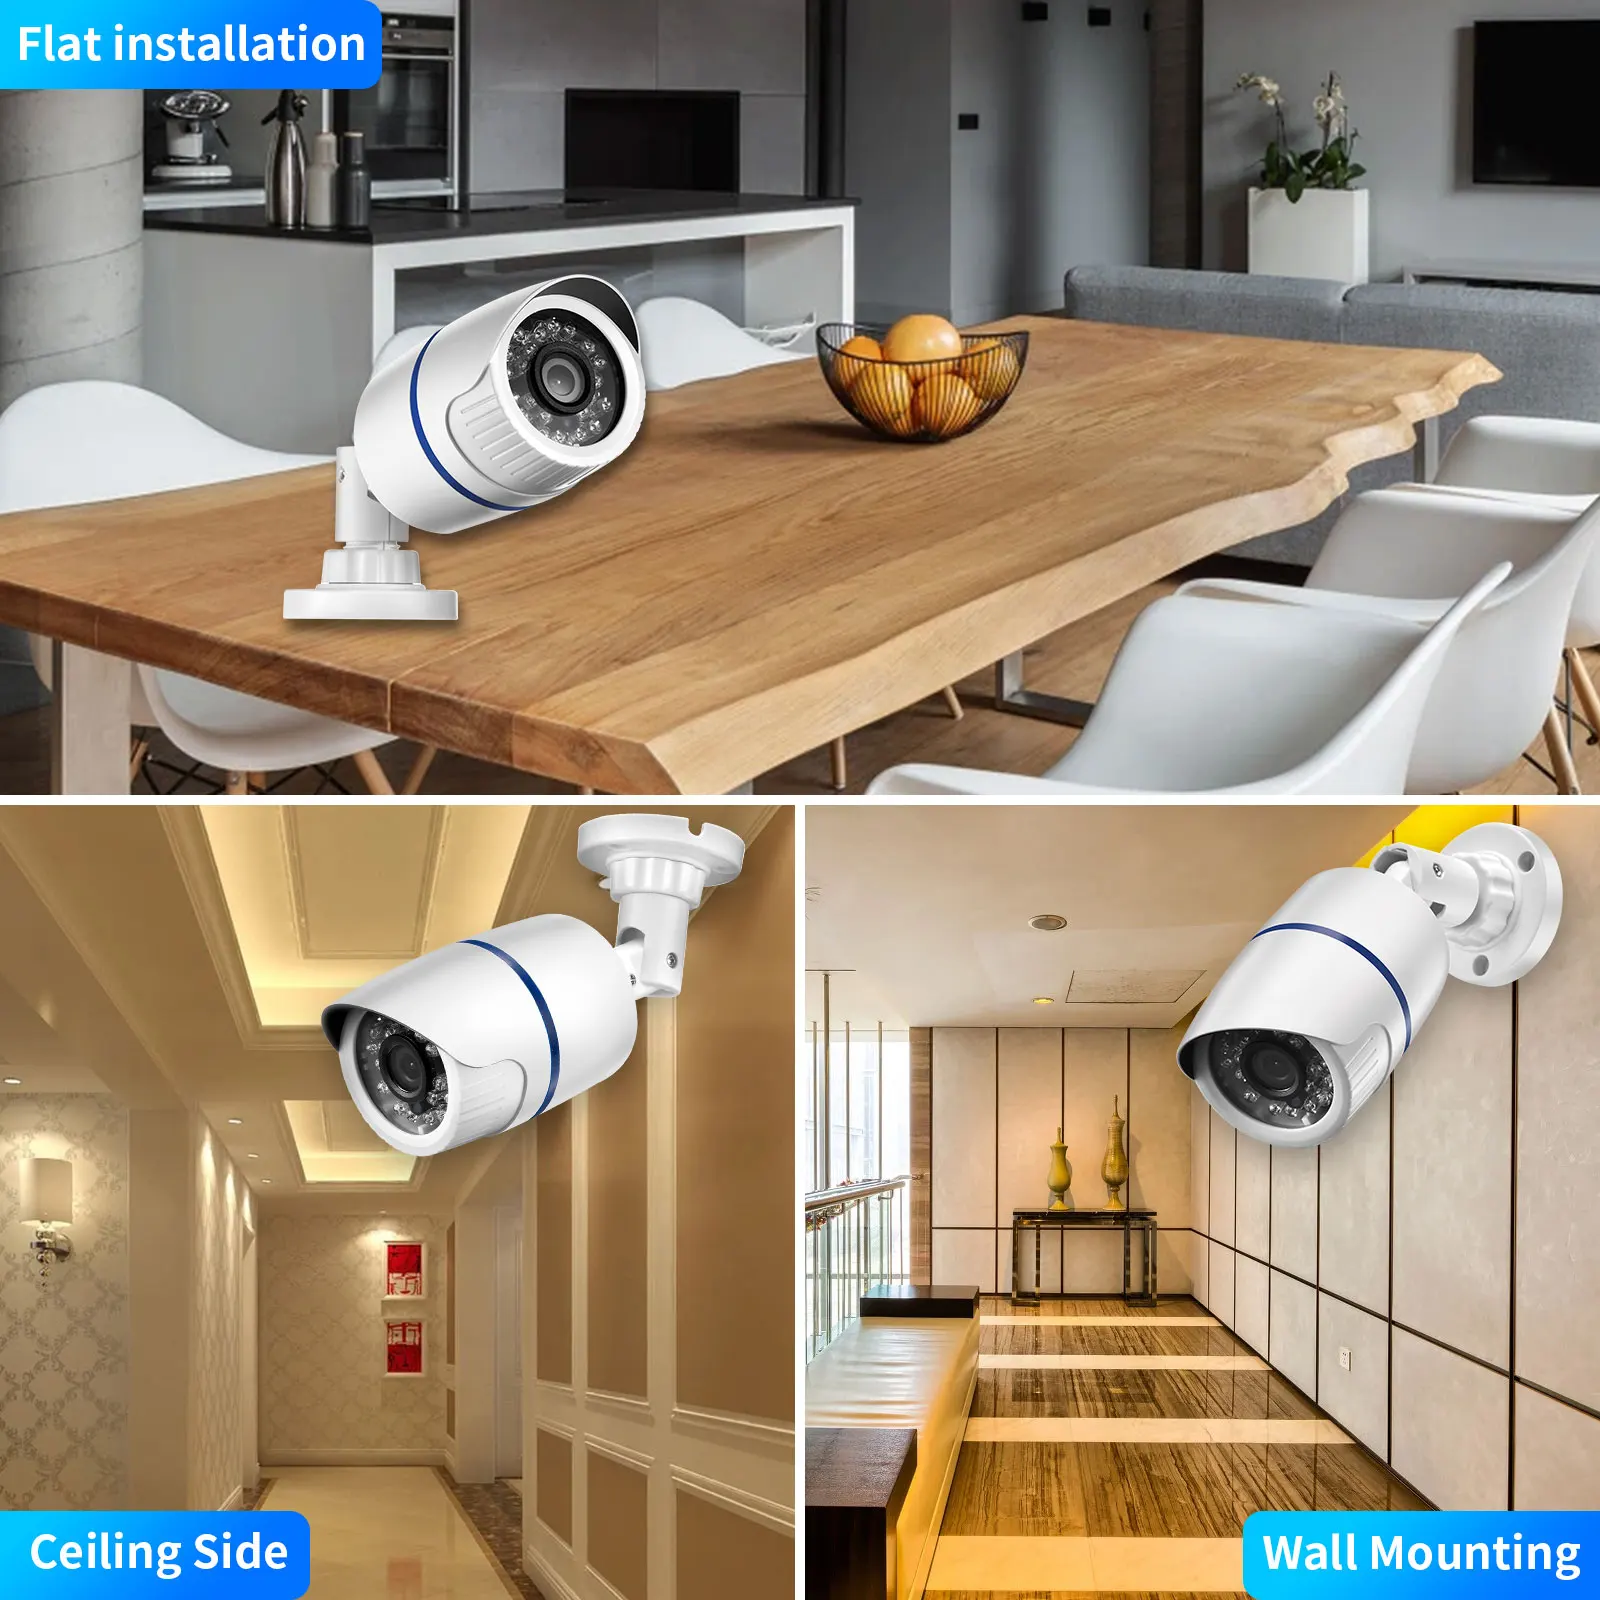 Gadinan vysoký definice AHD kamera 720P 1080P 5MP domácí CCTV záruka pozorování outdoorové vodotěsný IR noc vidění